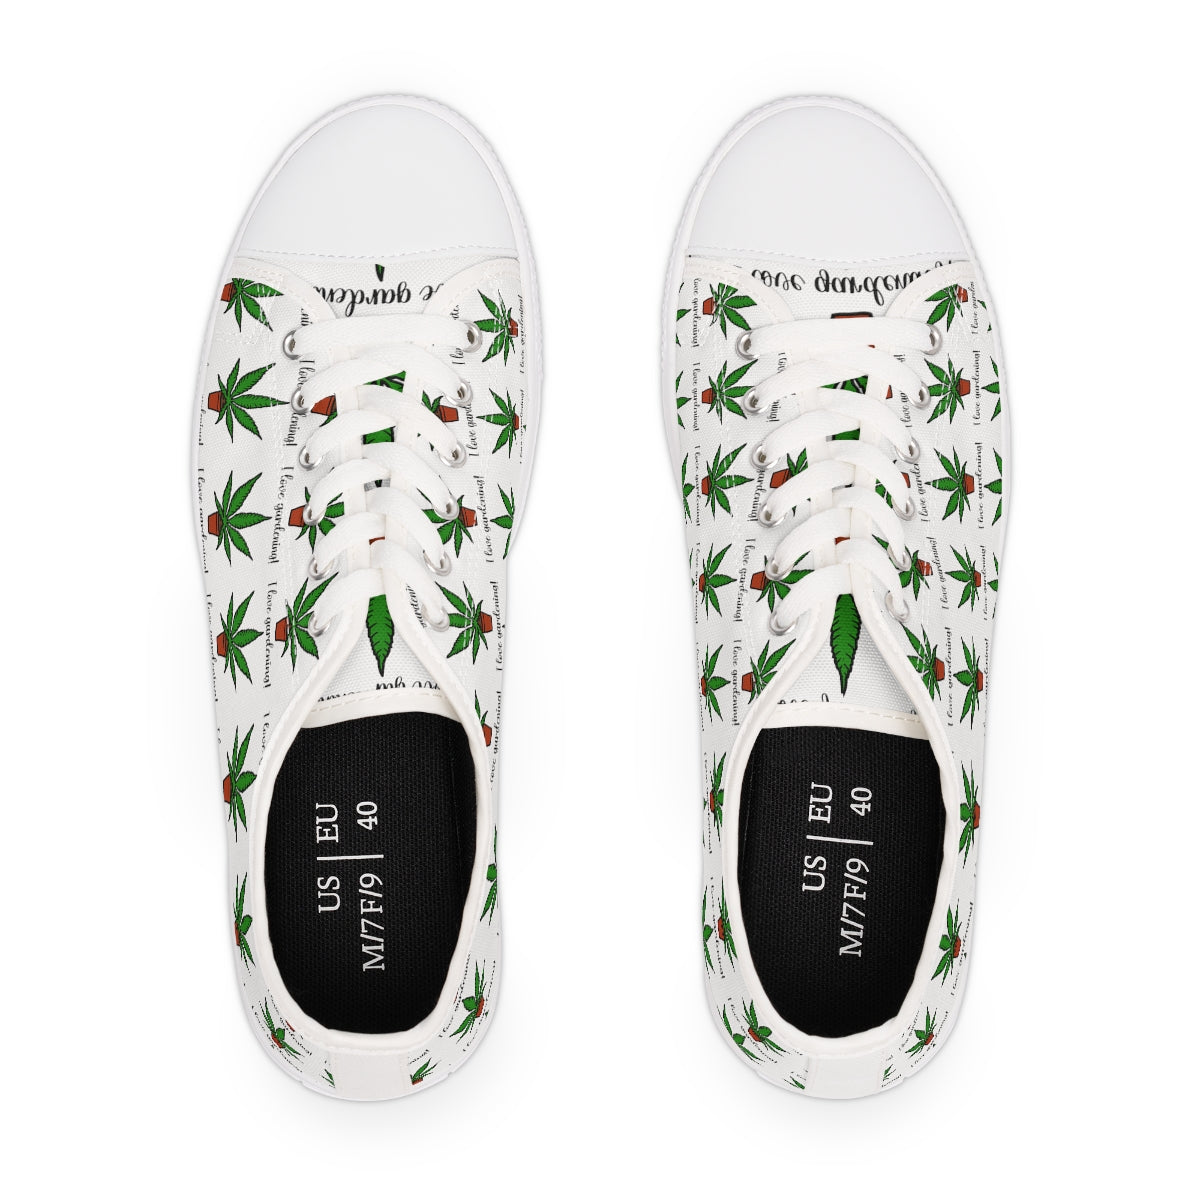 Cute 420 Weed Garden Women's Low Top Sneakers Gardenig Gift Weed Gift